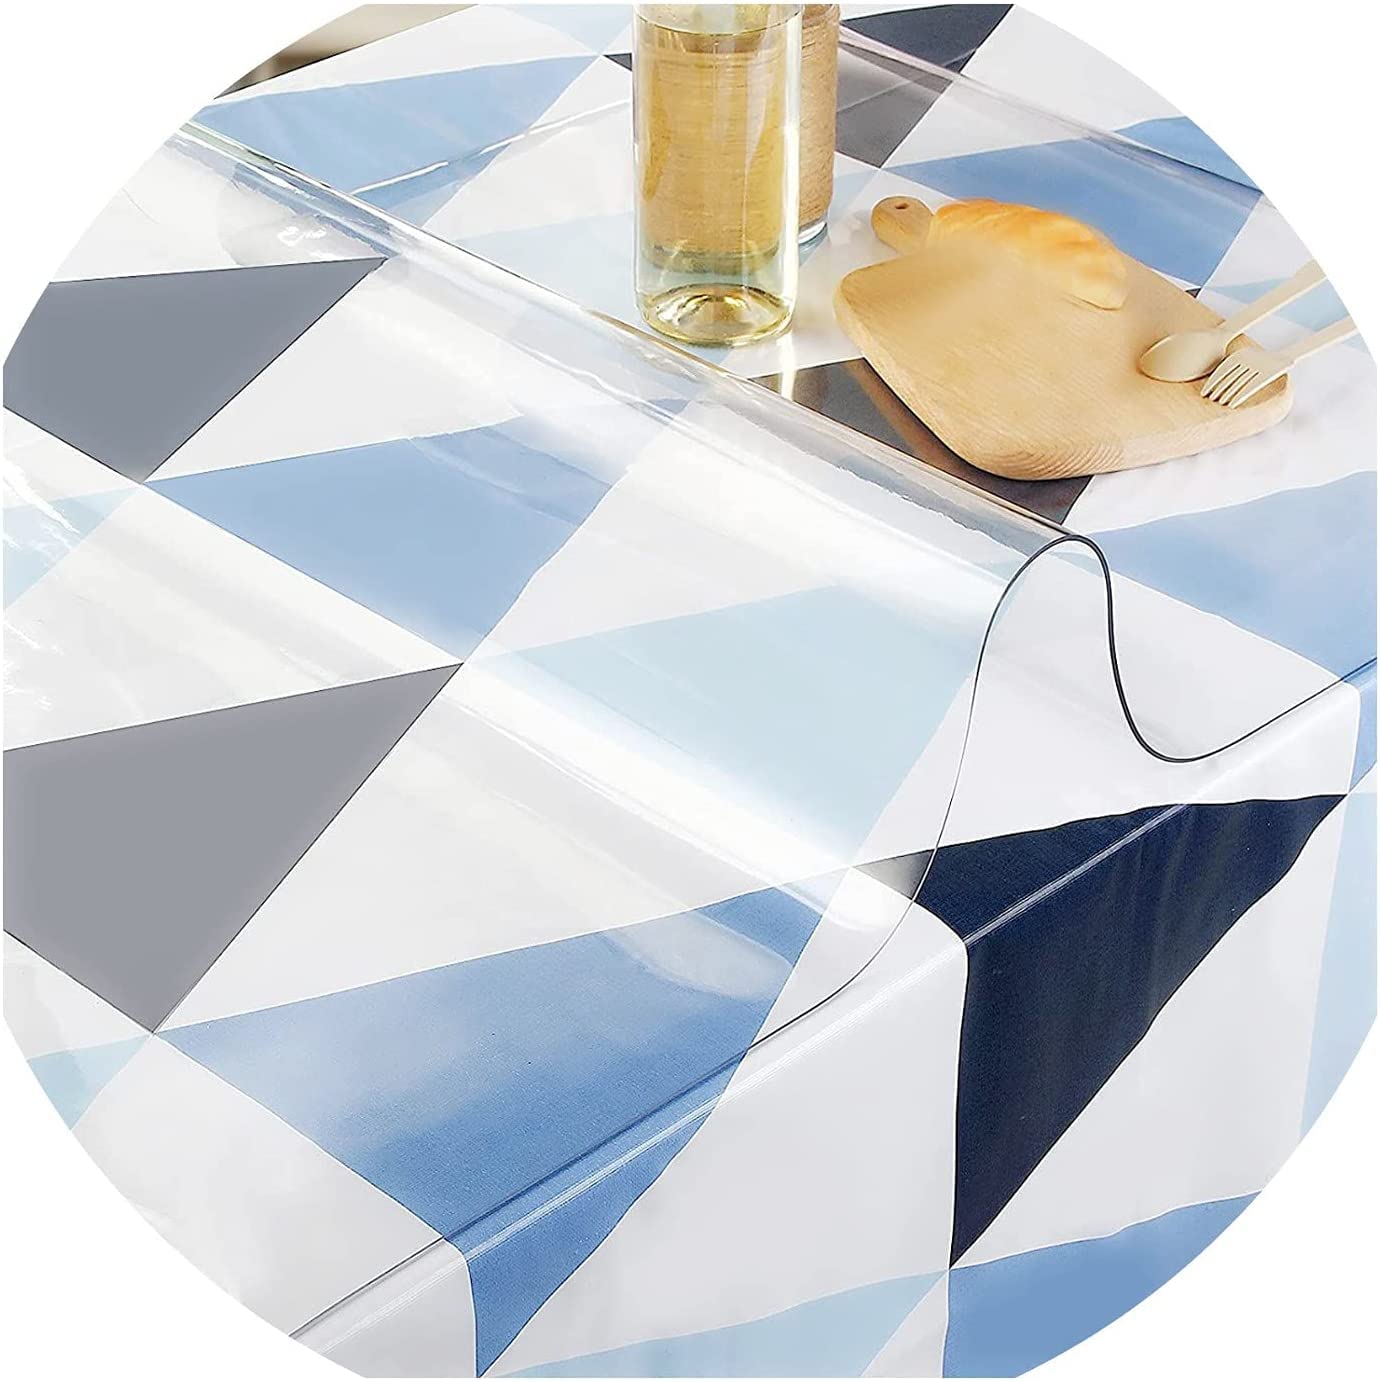 Tischschutz Folie Transparente PVC Folie Schutzfolie Glasklar Tischdecke Tischfolie,Wasserdicht VerschleißFest HitzebestäNdig,Geeignet FüR KüChe, Garten Und BüRo(Color:2mm,Size: 75x75cm)